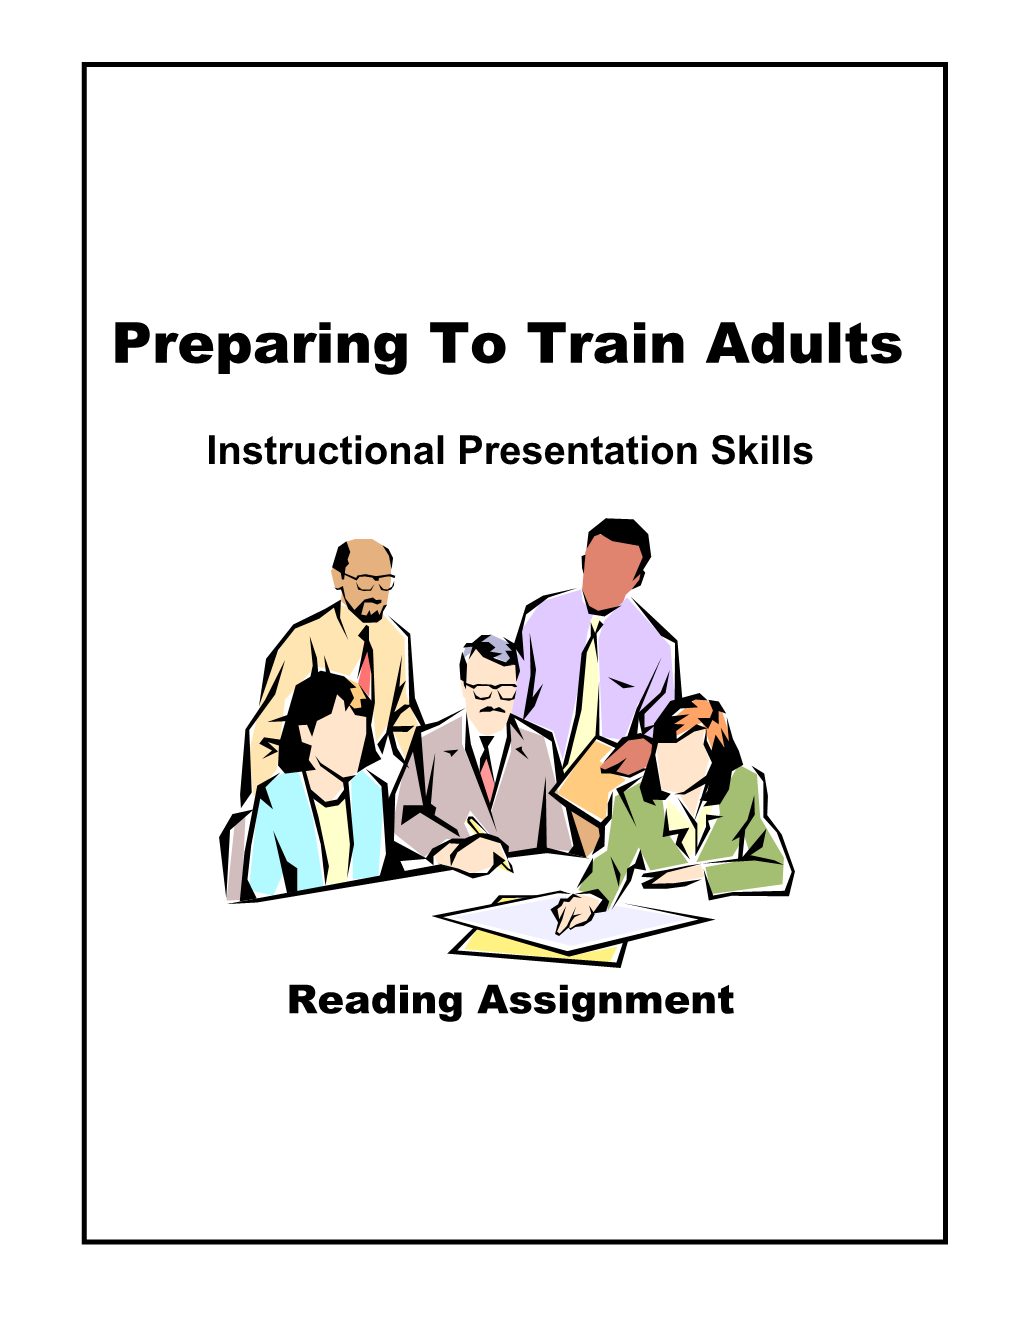 Instructional Presentation Skills